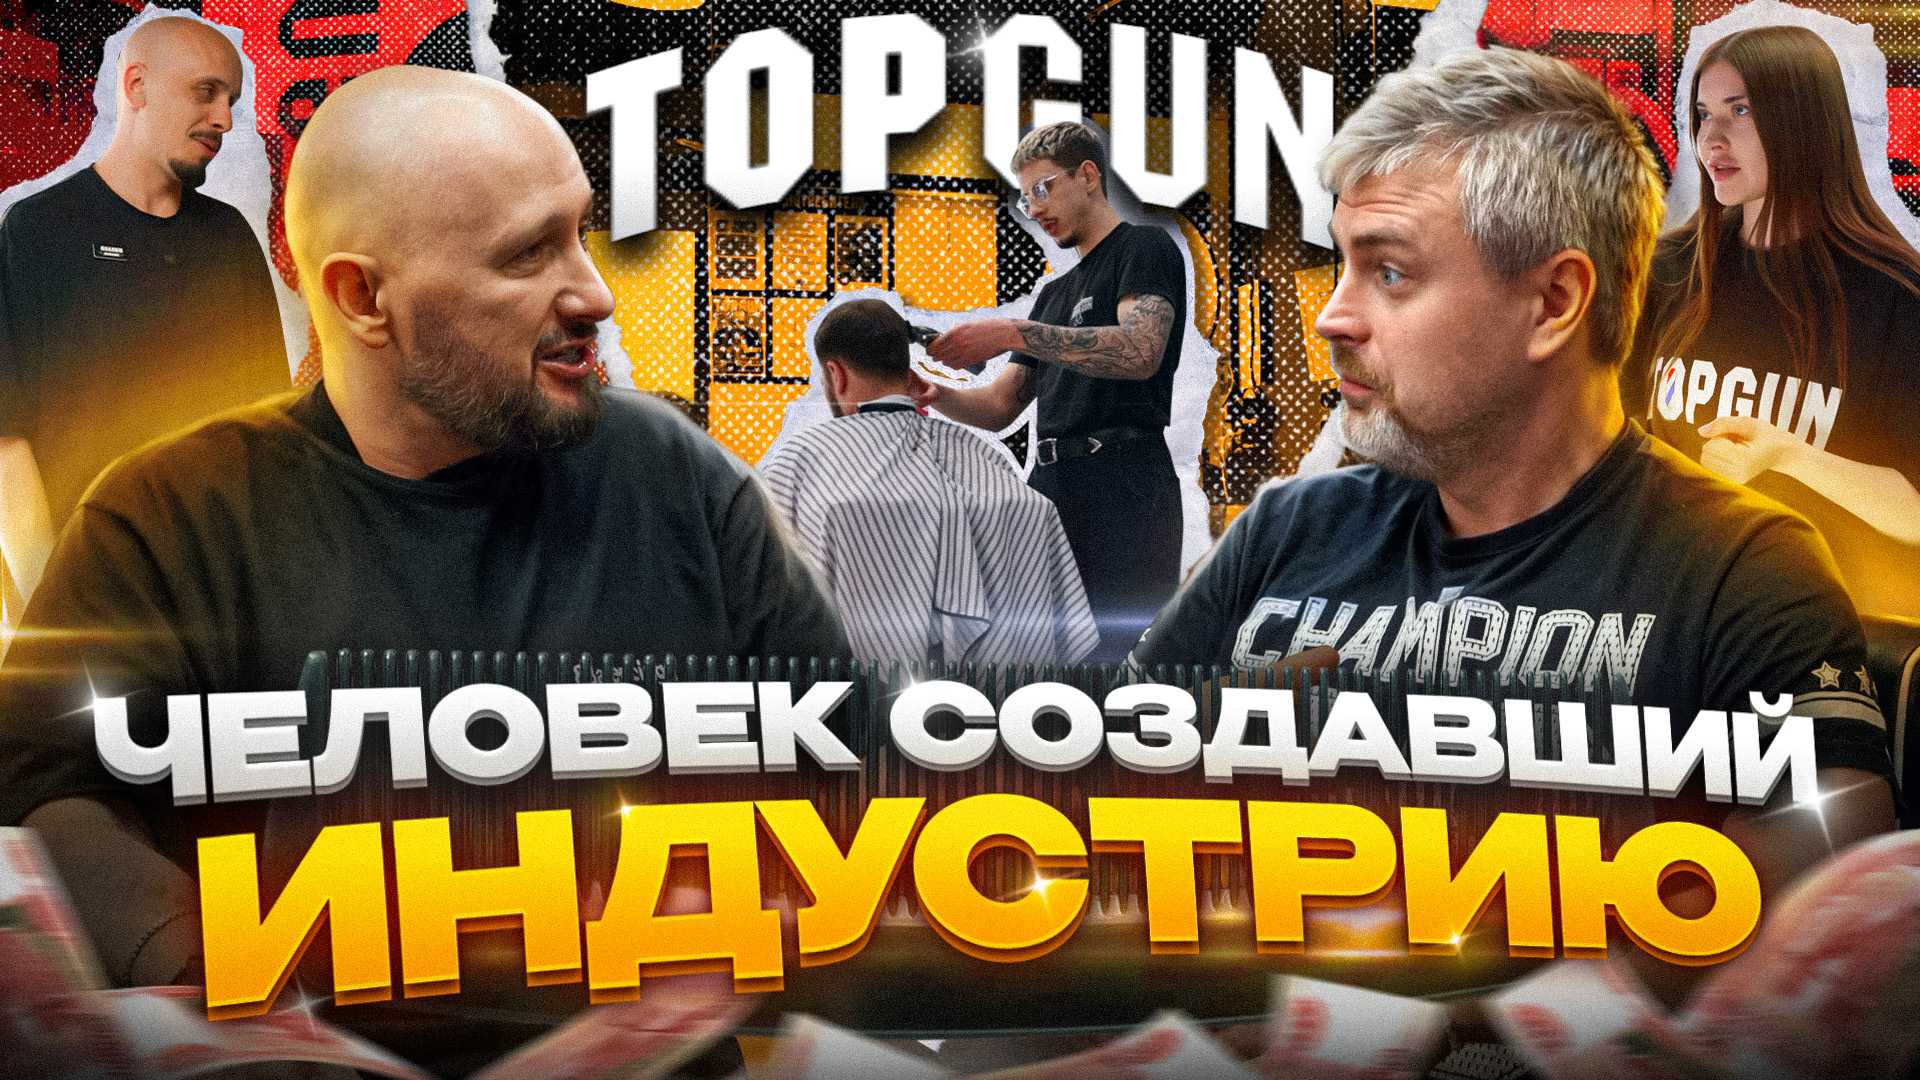 Франшиза TOPGUN! Готовый бизнес! Интервью с основателем Алексеем Локонцевым! Мы В ДЕЛЕ!